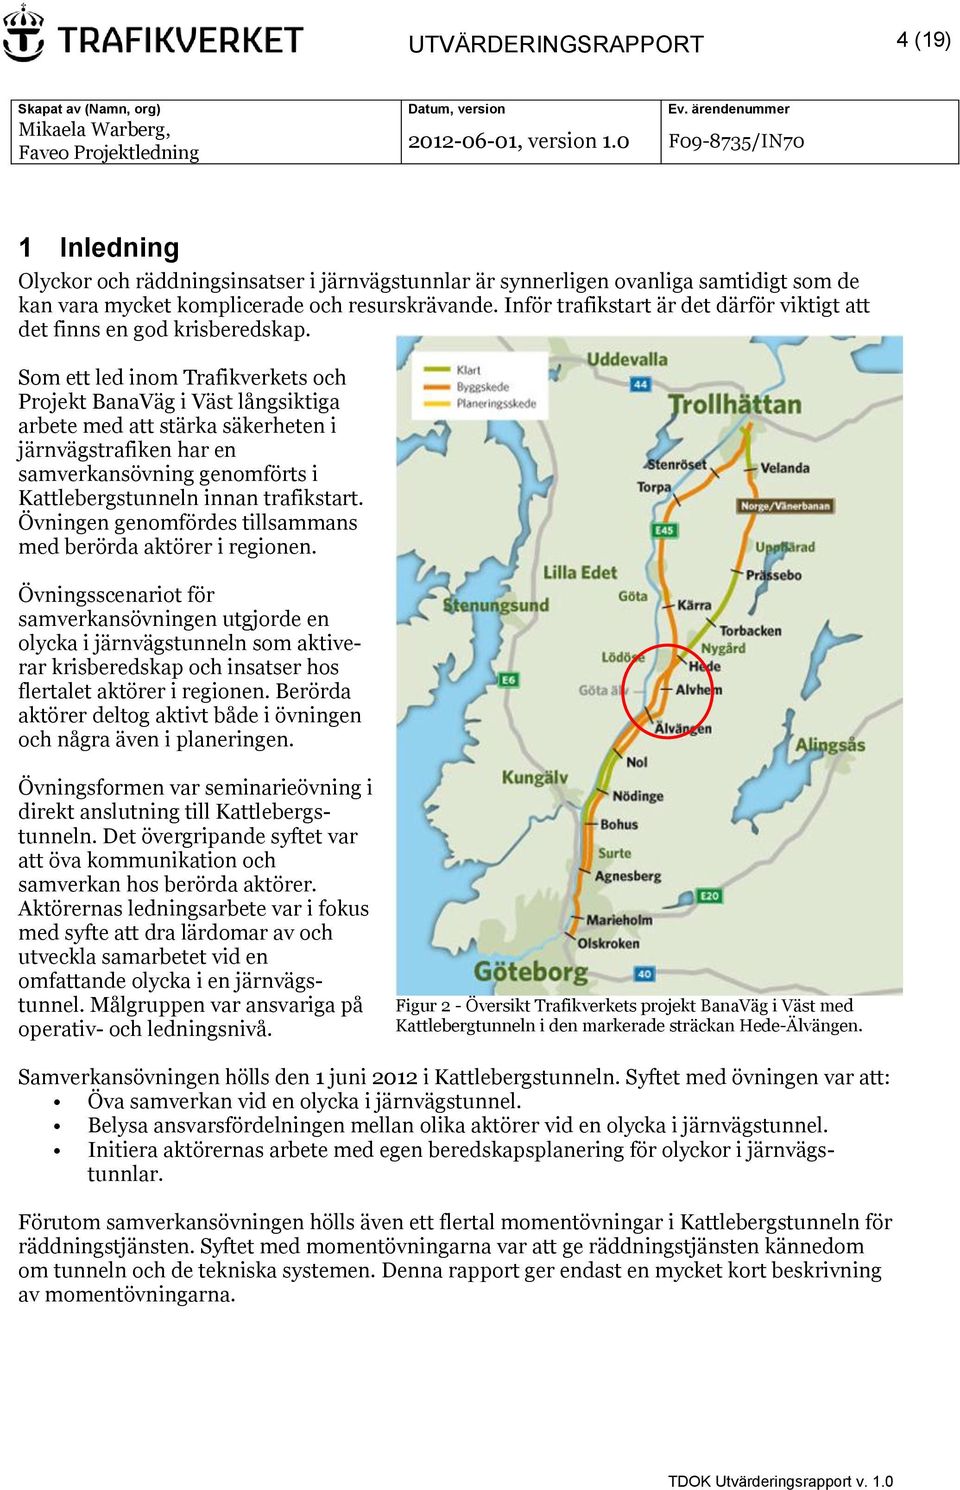 Som ett led inom Trafikverkets och Projekt BanaVäg i Väst långsiktiga arbete med att stärka säkerheten i järnvägstrafiken har en samverkansövning genomförts i Kattlebergstunneln innan trafikstart.